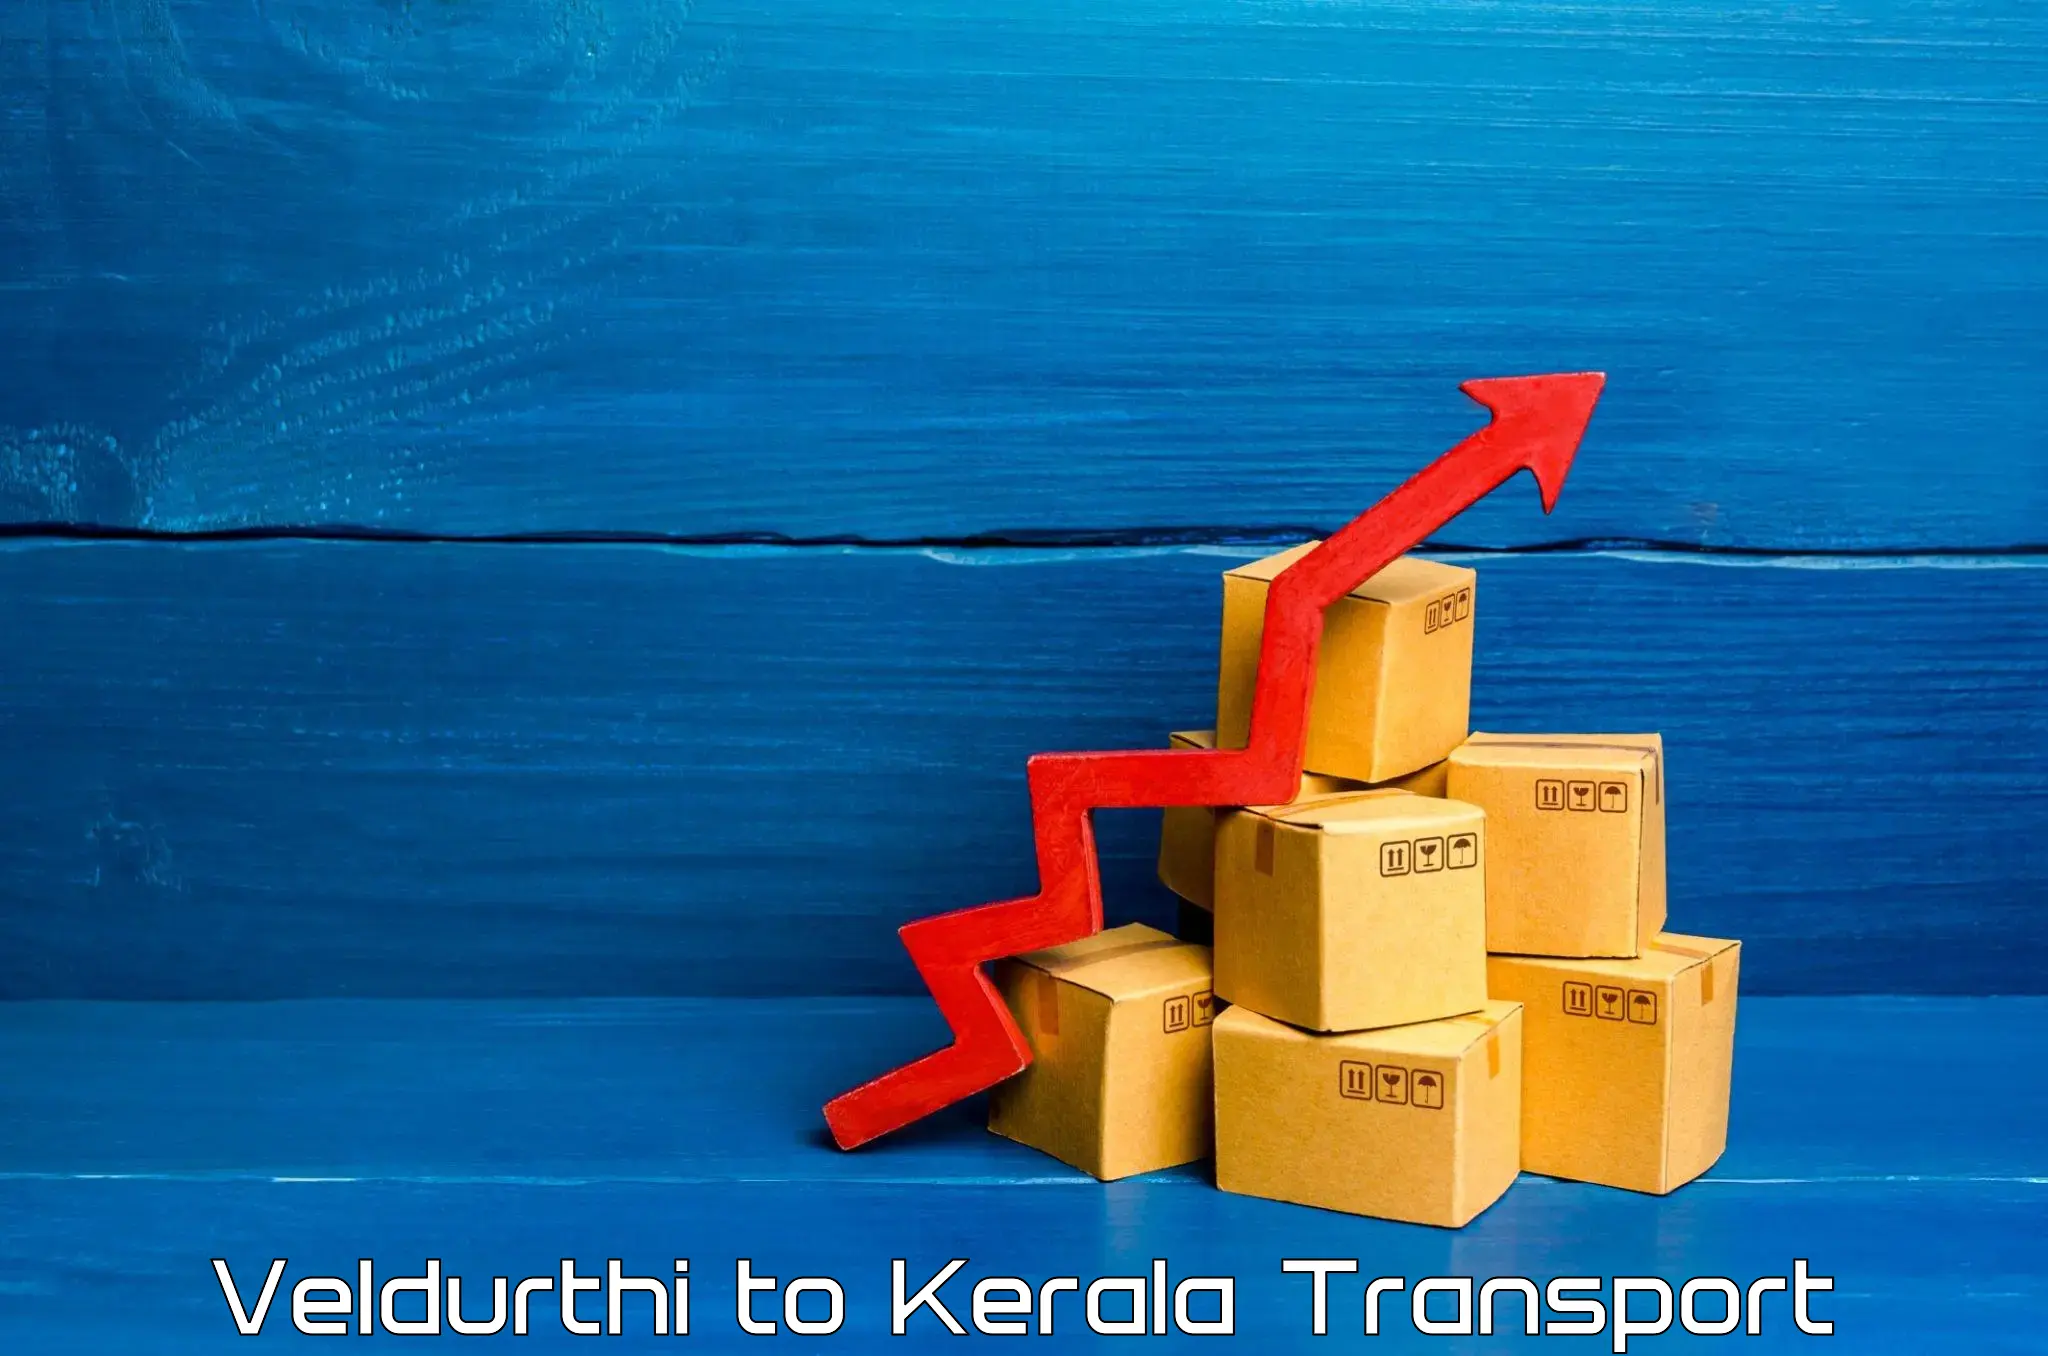 Truck transport companies in India Veldurthi to Kunnamkulam